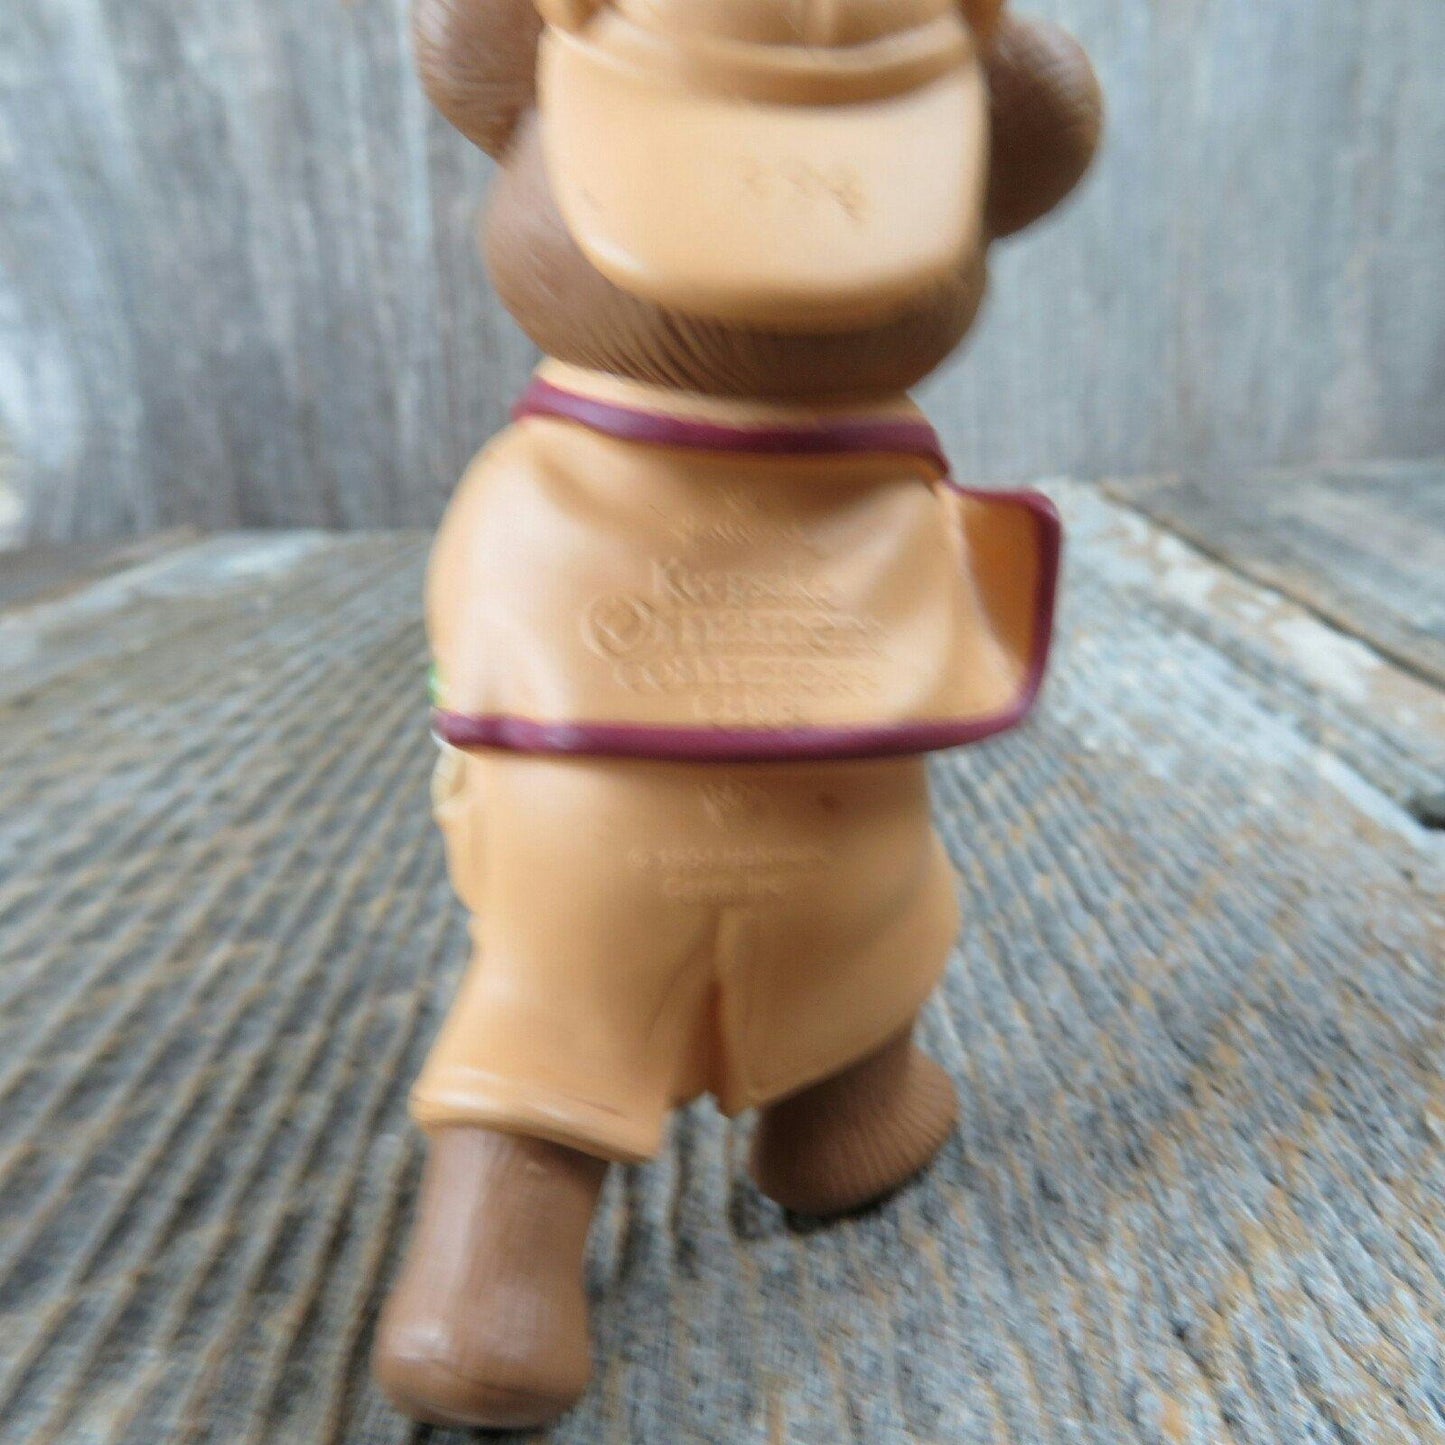 Vintage Teddy Bear Detective Ornament Hallmark Holiday Pursuit 1994 Keepsake